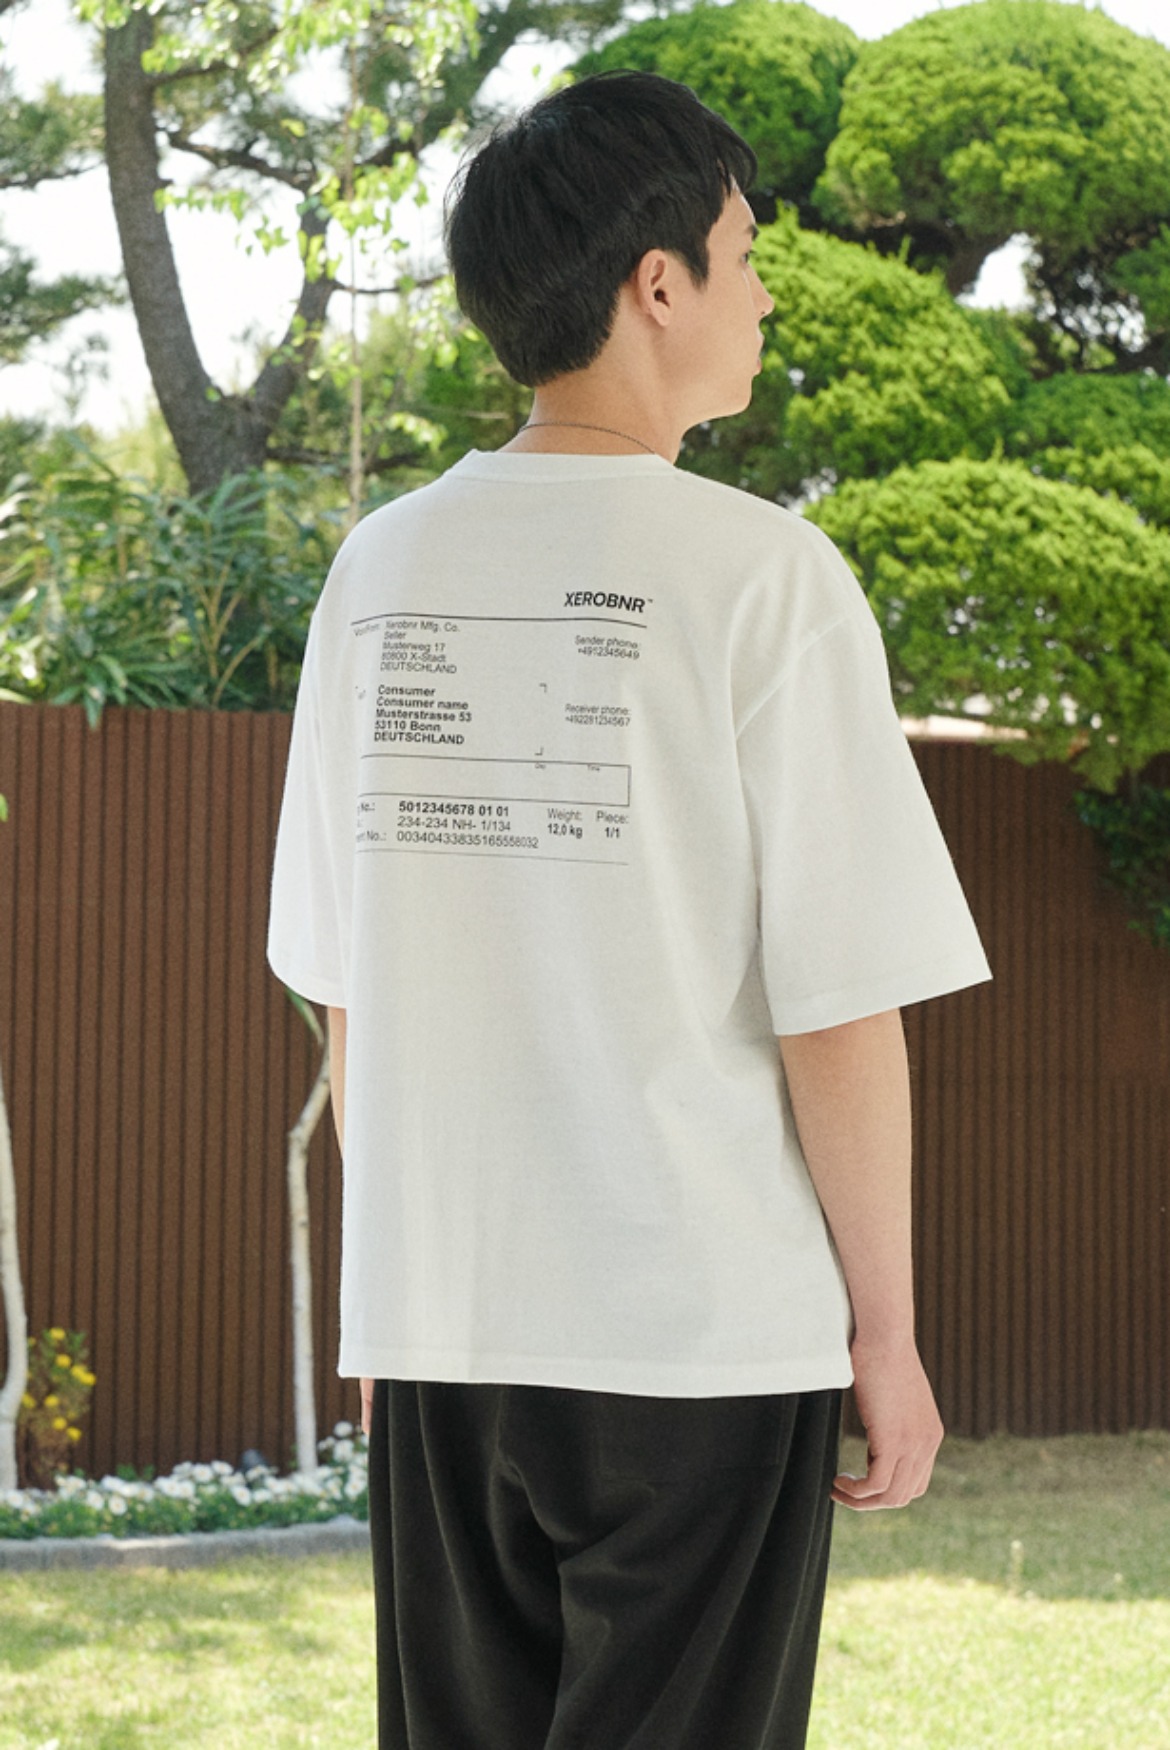 Invoice T-Shirts [White]